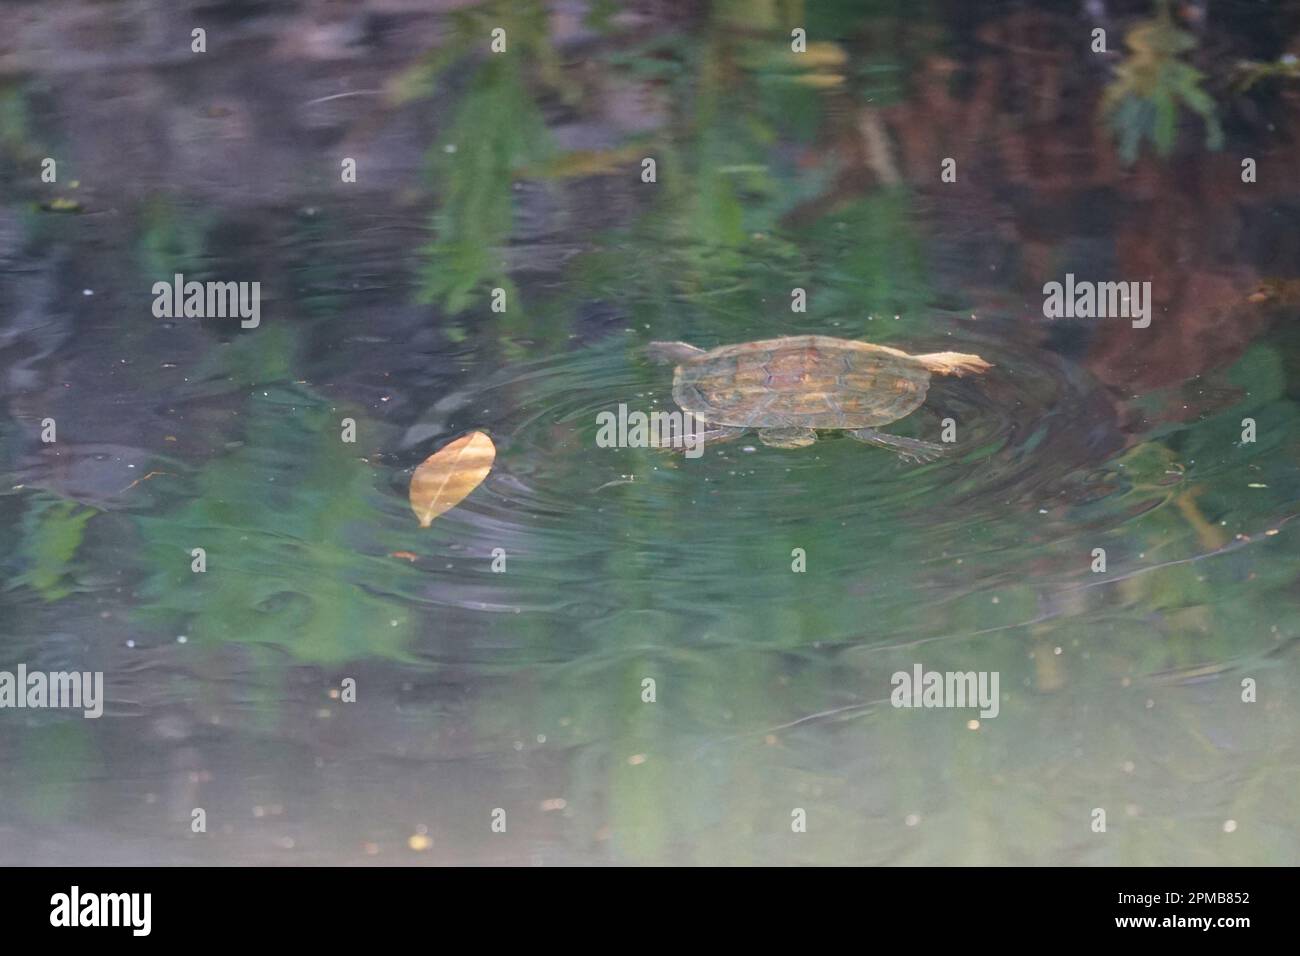 Tartaruga nuoto in un fiume, acqua di ruscello, tartaruga conchiglia, schwimmen Schildkröte Rhodos Rodi Griechenland Grecia Foto Stock